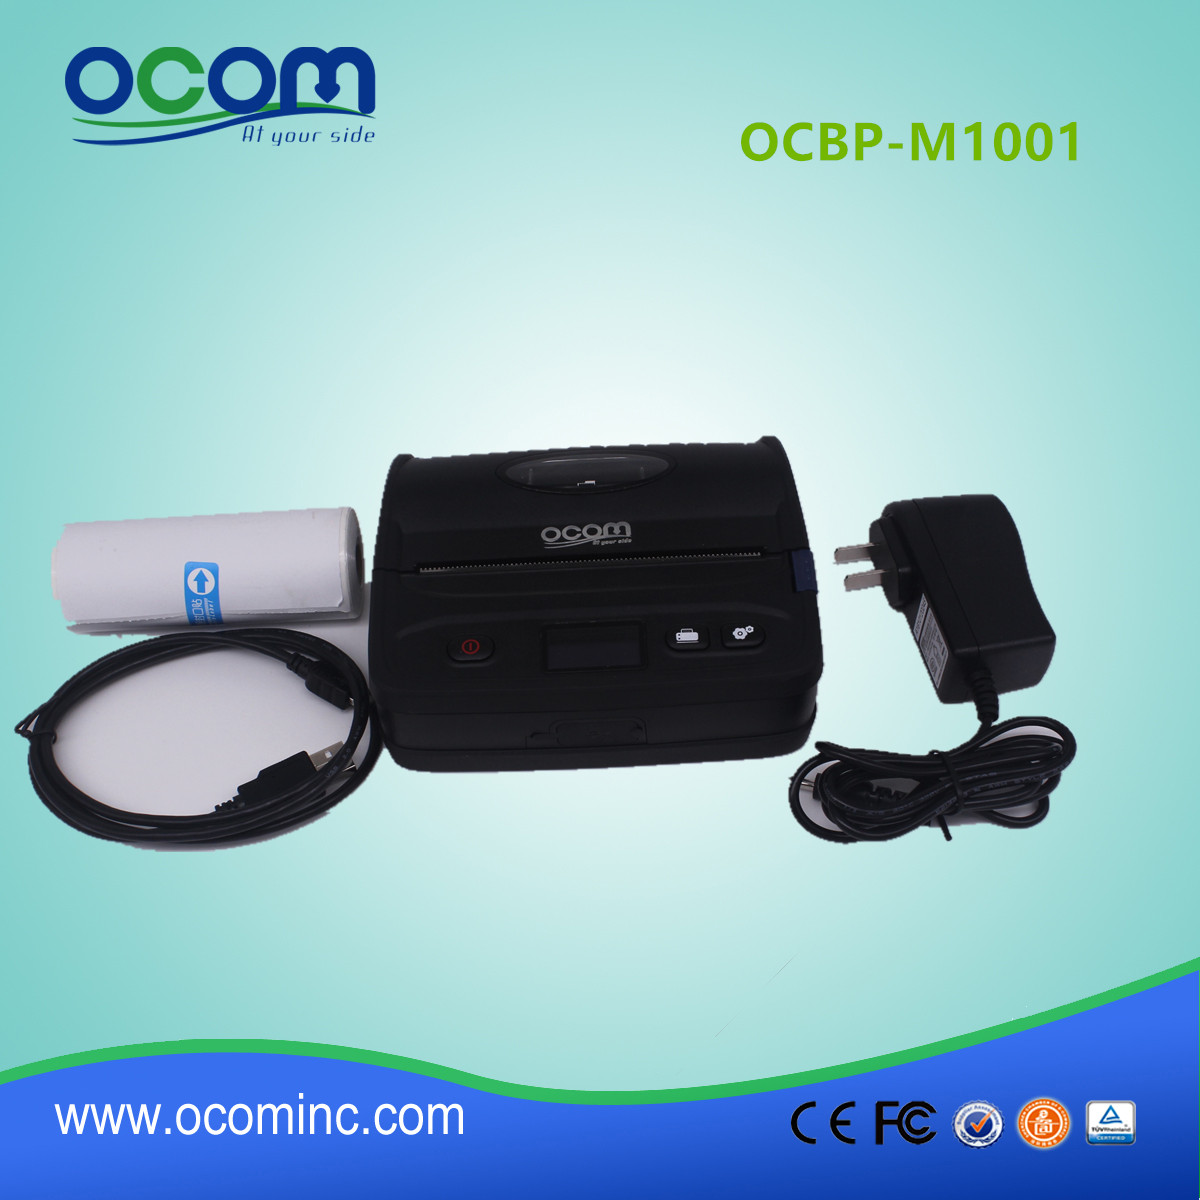 108мм Portbale штрих-кодов Принтер для печати этикеток с Bluetooth (ОЦБФ-M1001)